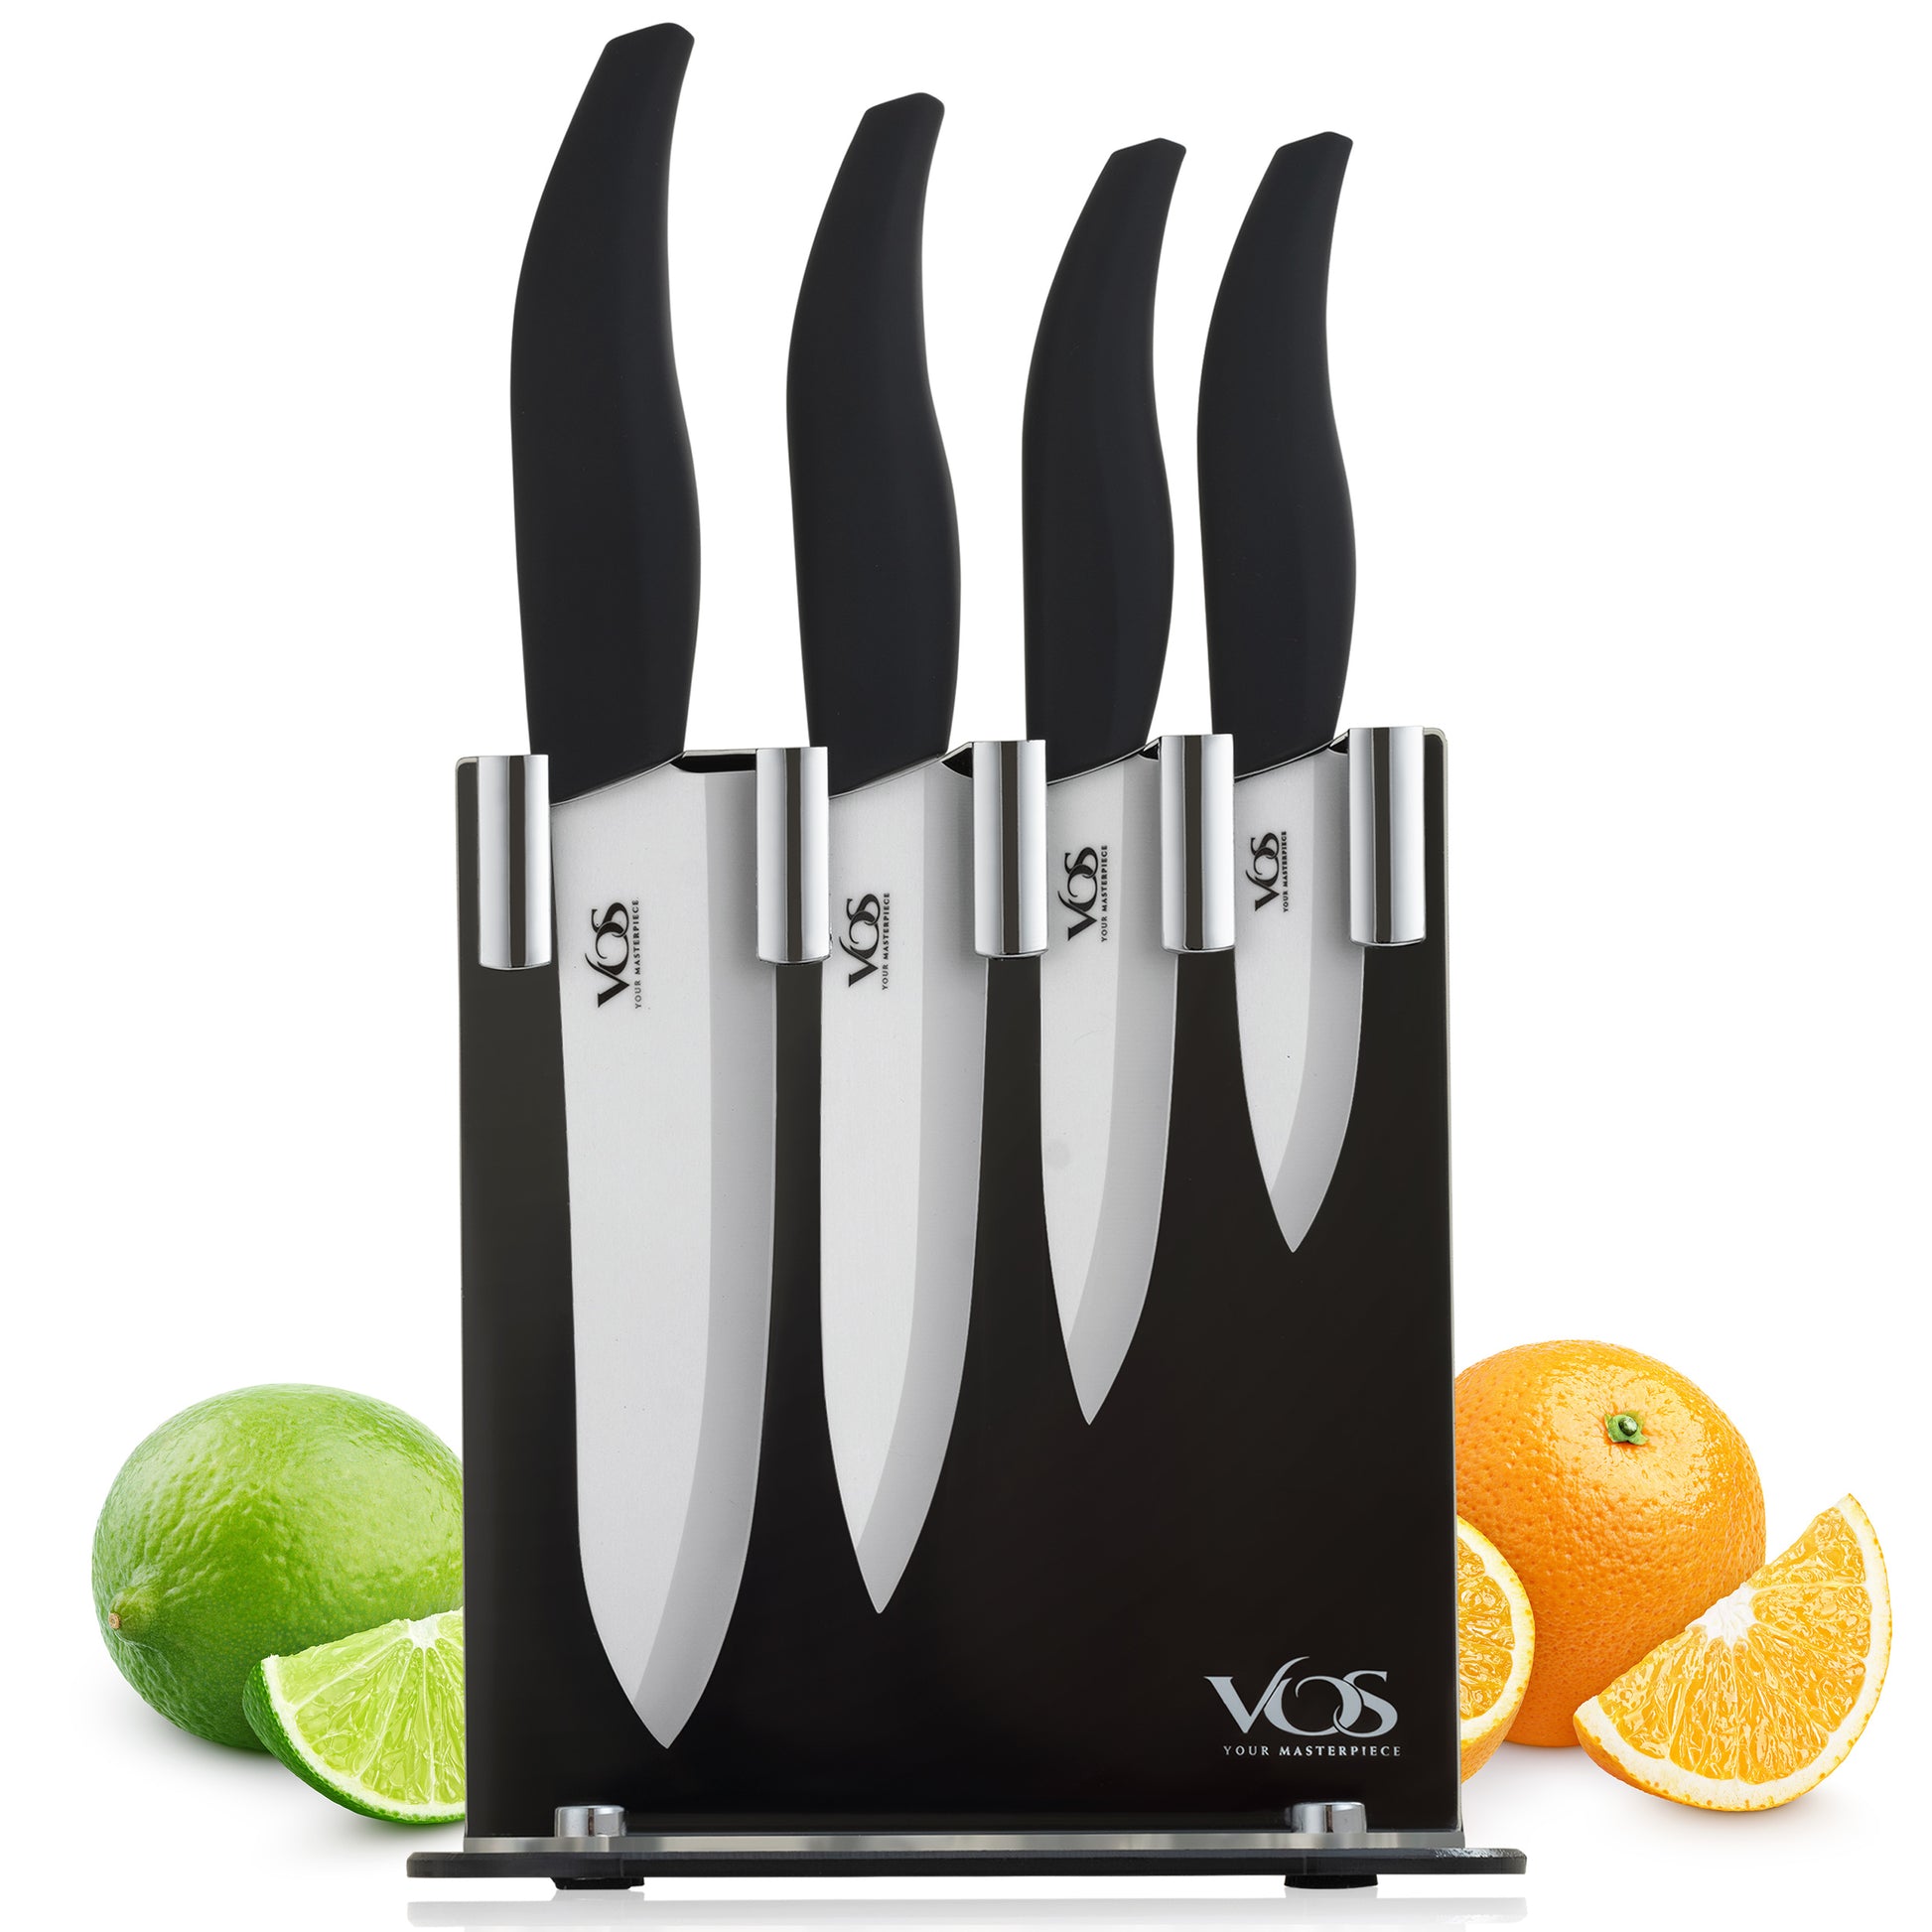  Kai Wasabi Black Utility Knife, 6-Inch: Kitchen Utility Knives:  Home & Kitchen